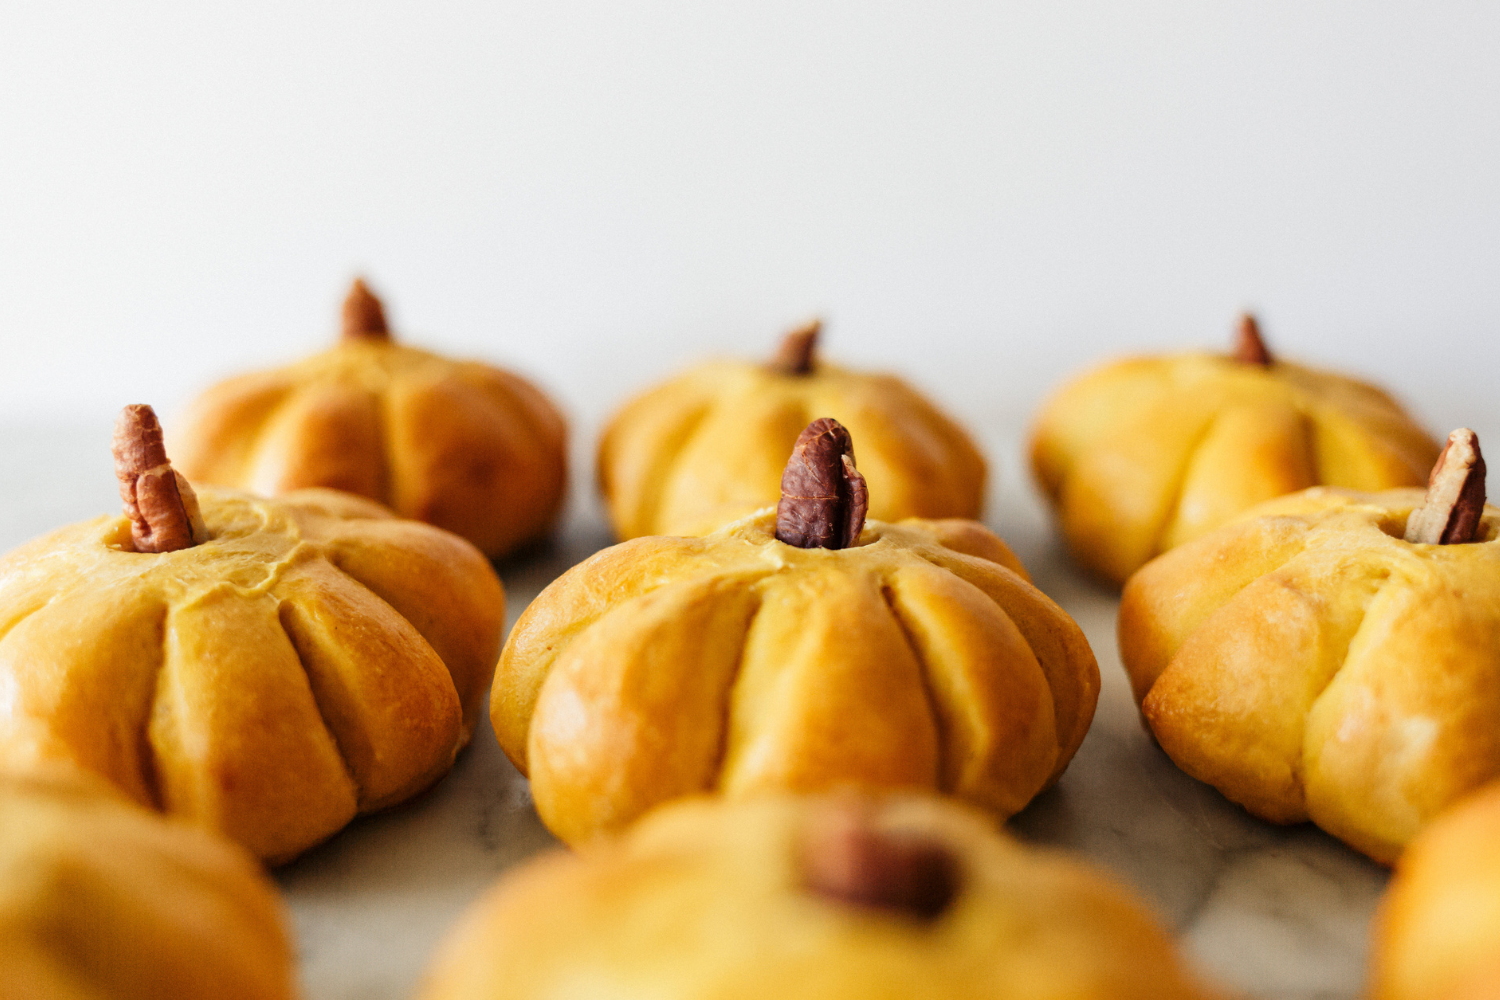 lineup of homemade pumpkin bread rolls on a plain background.